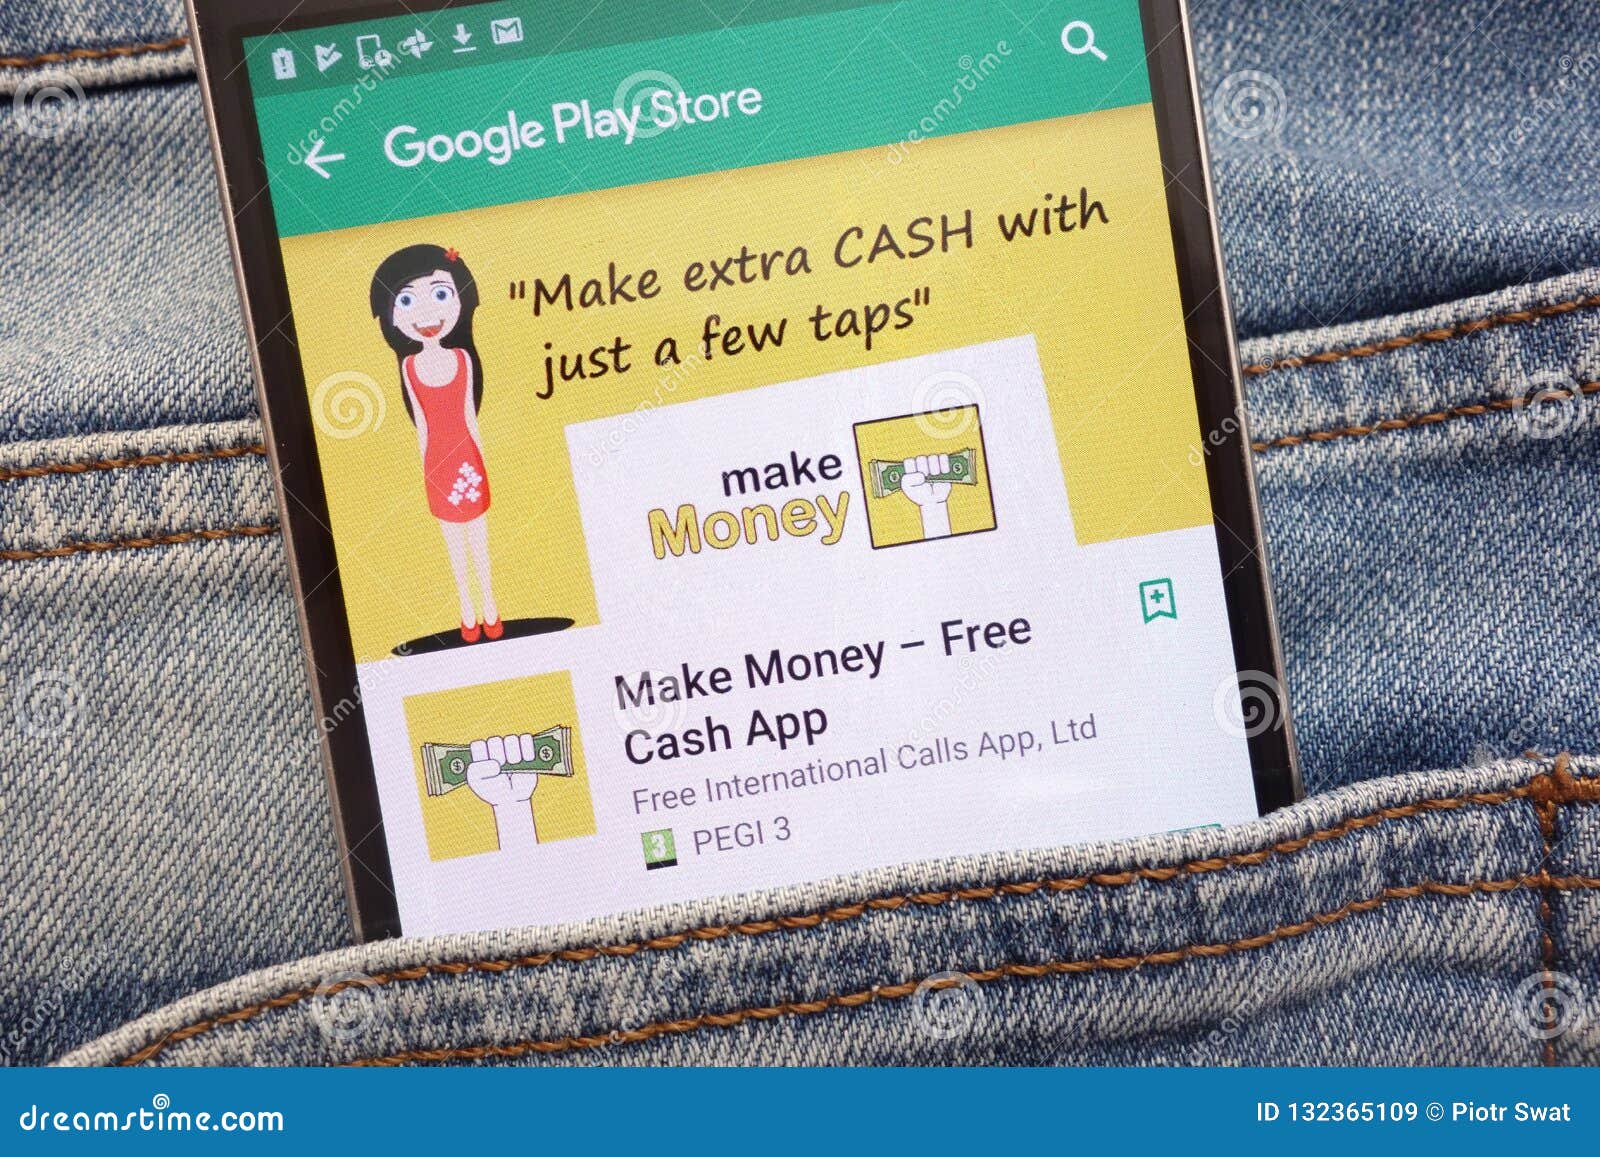 Make Status Earn Money Apps On Google Play | Making Money ...